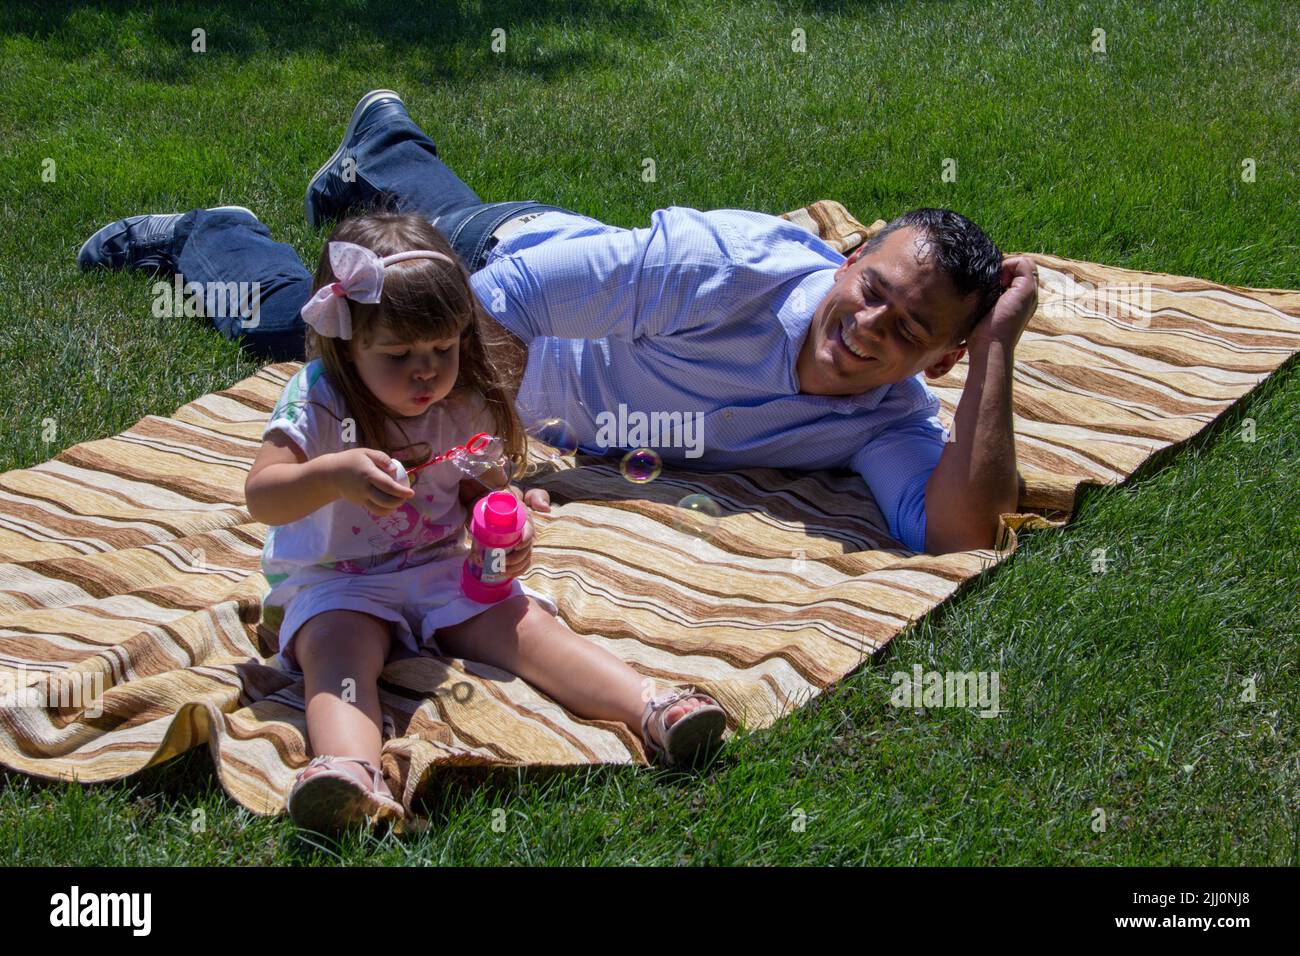 Bild eines jungen Vaters, der auf einer grünen Wiese sitzt und mit seiner Tochter spielt, die Seifenblasen macht. Bezug auf die Bindung zwischen Vater und Tochter Stockfoto